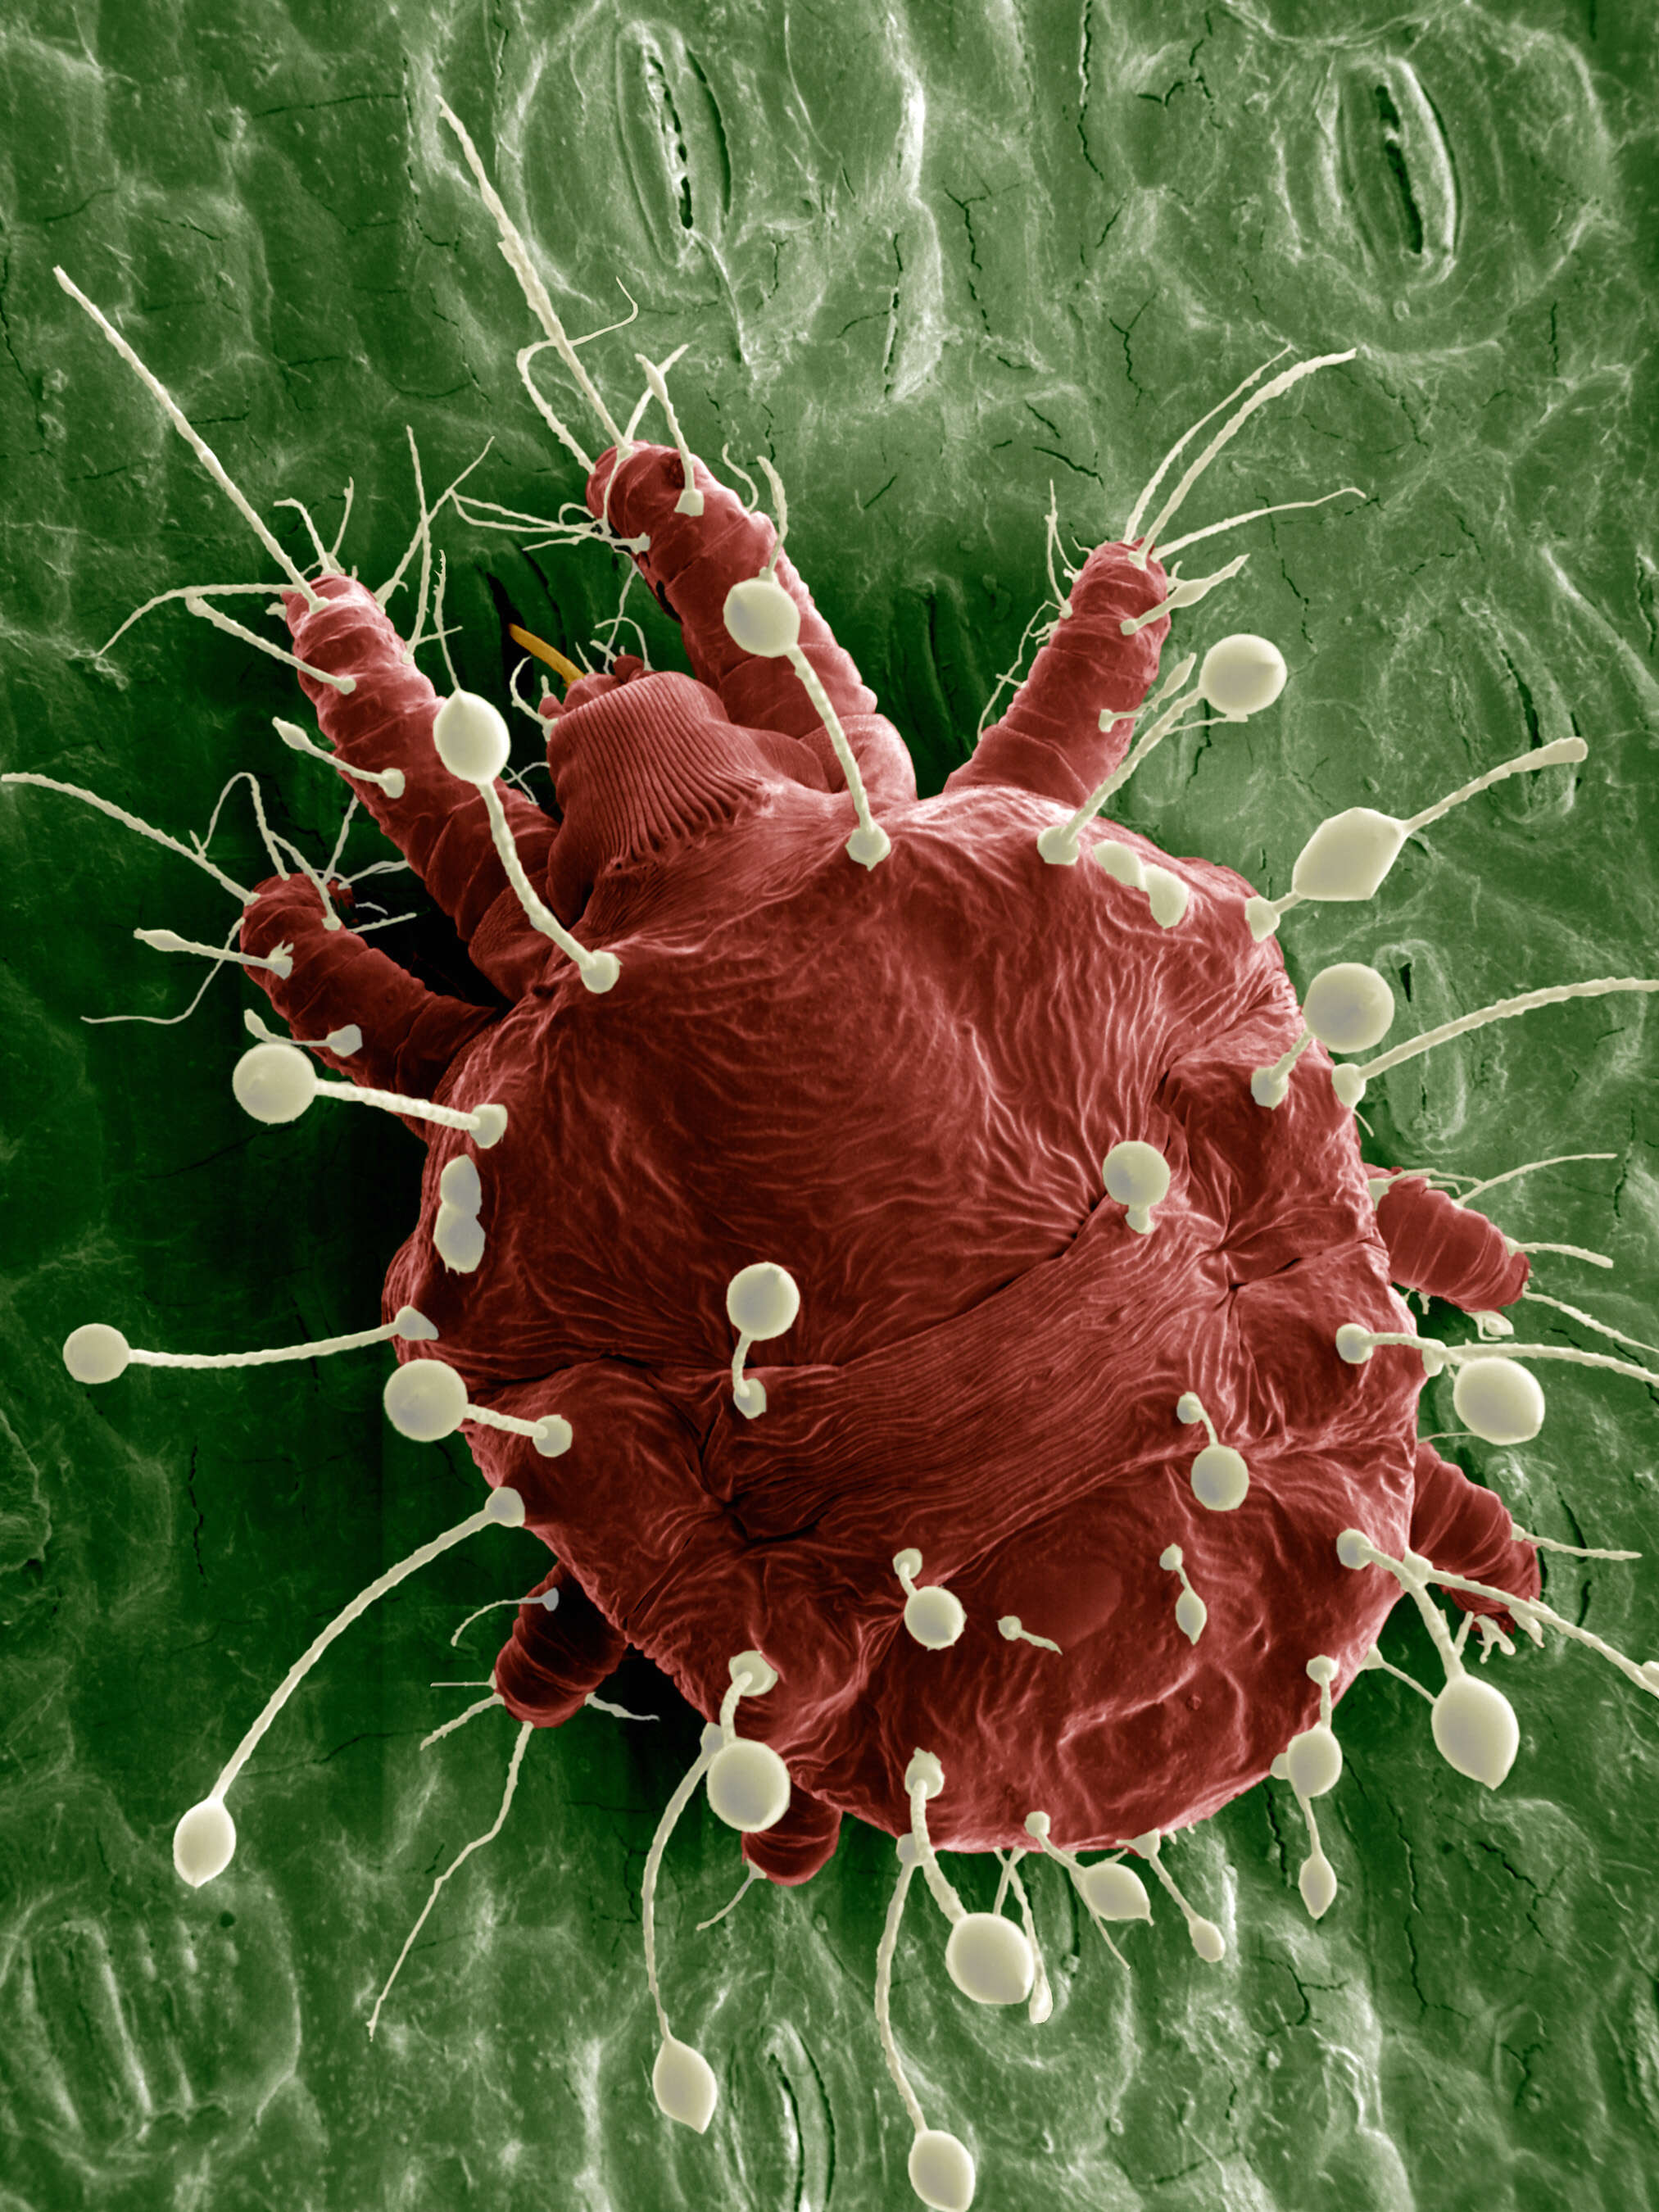 Image of false spider mites